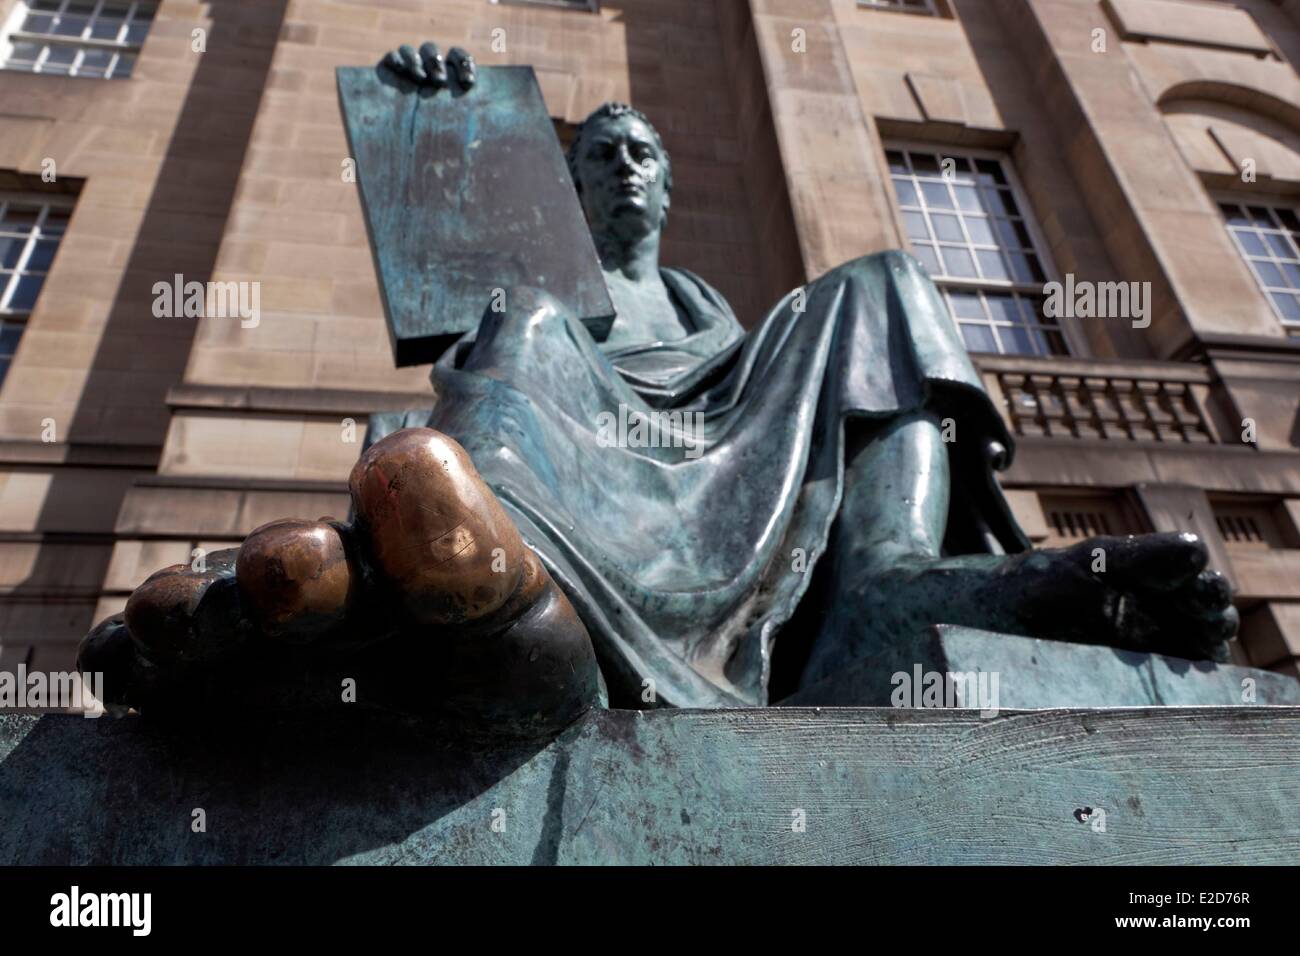 Vereinigtes Königreich Schottland Edinburgh Weltkulturerbe von UNESCO Nahaufnahme der Statue des David Hume Philosoph Ökonom Stockfoto